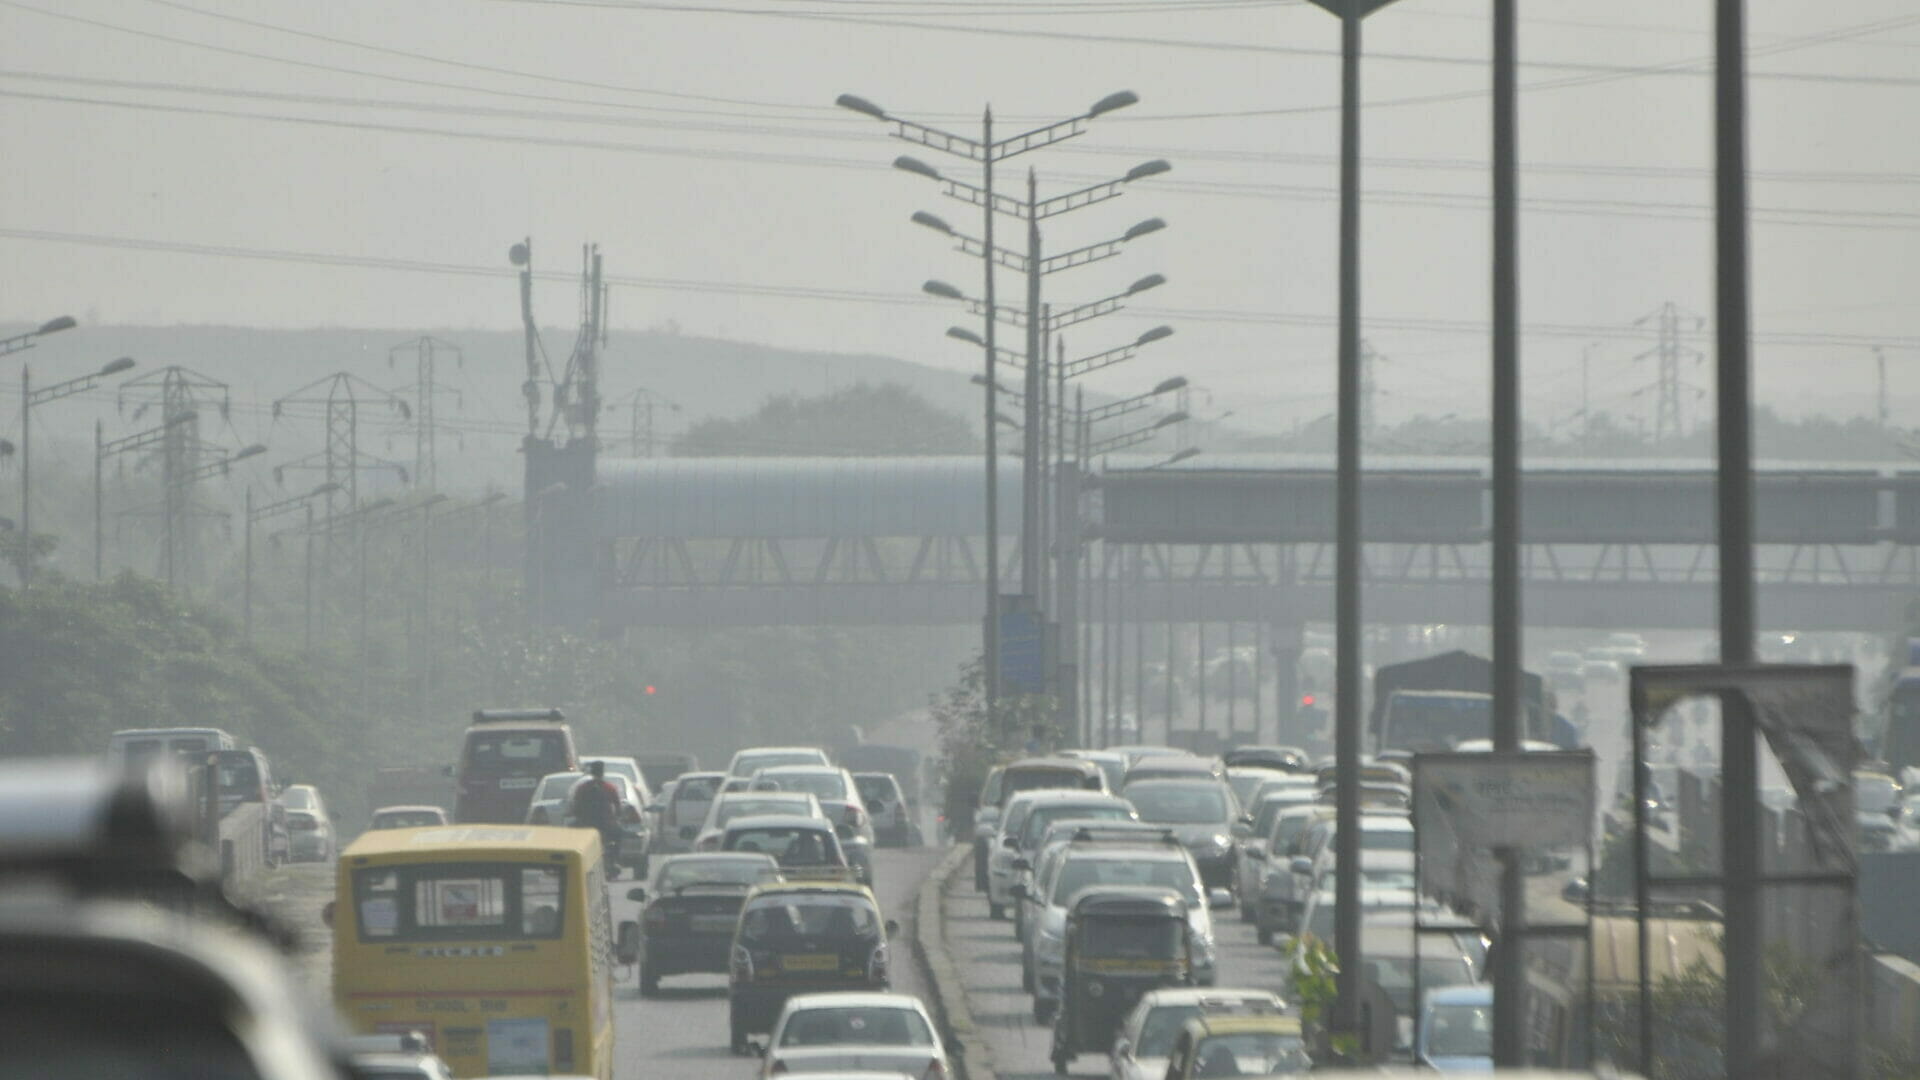 Mumbai's traffic